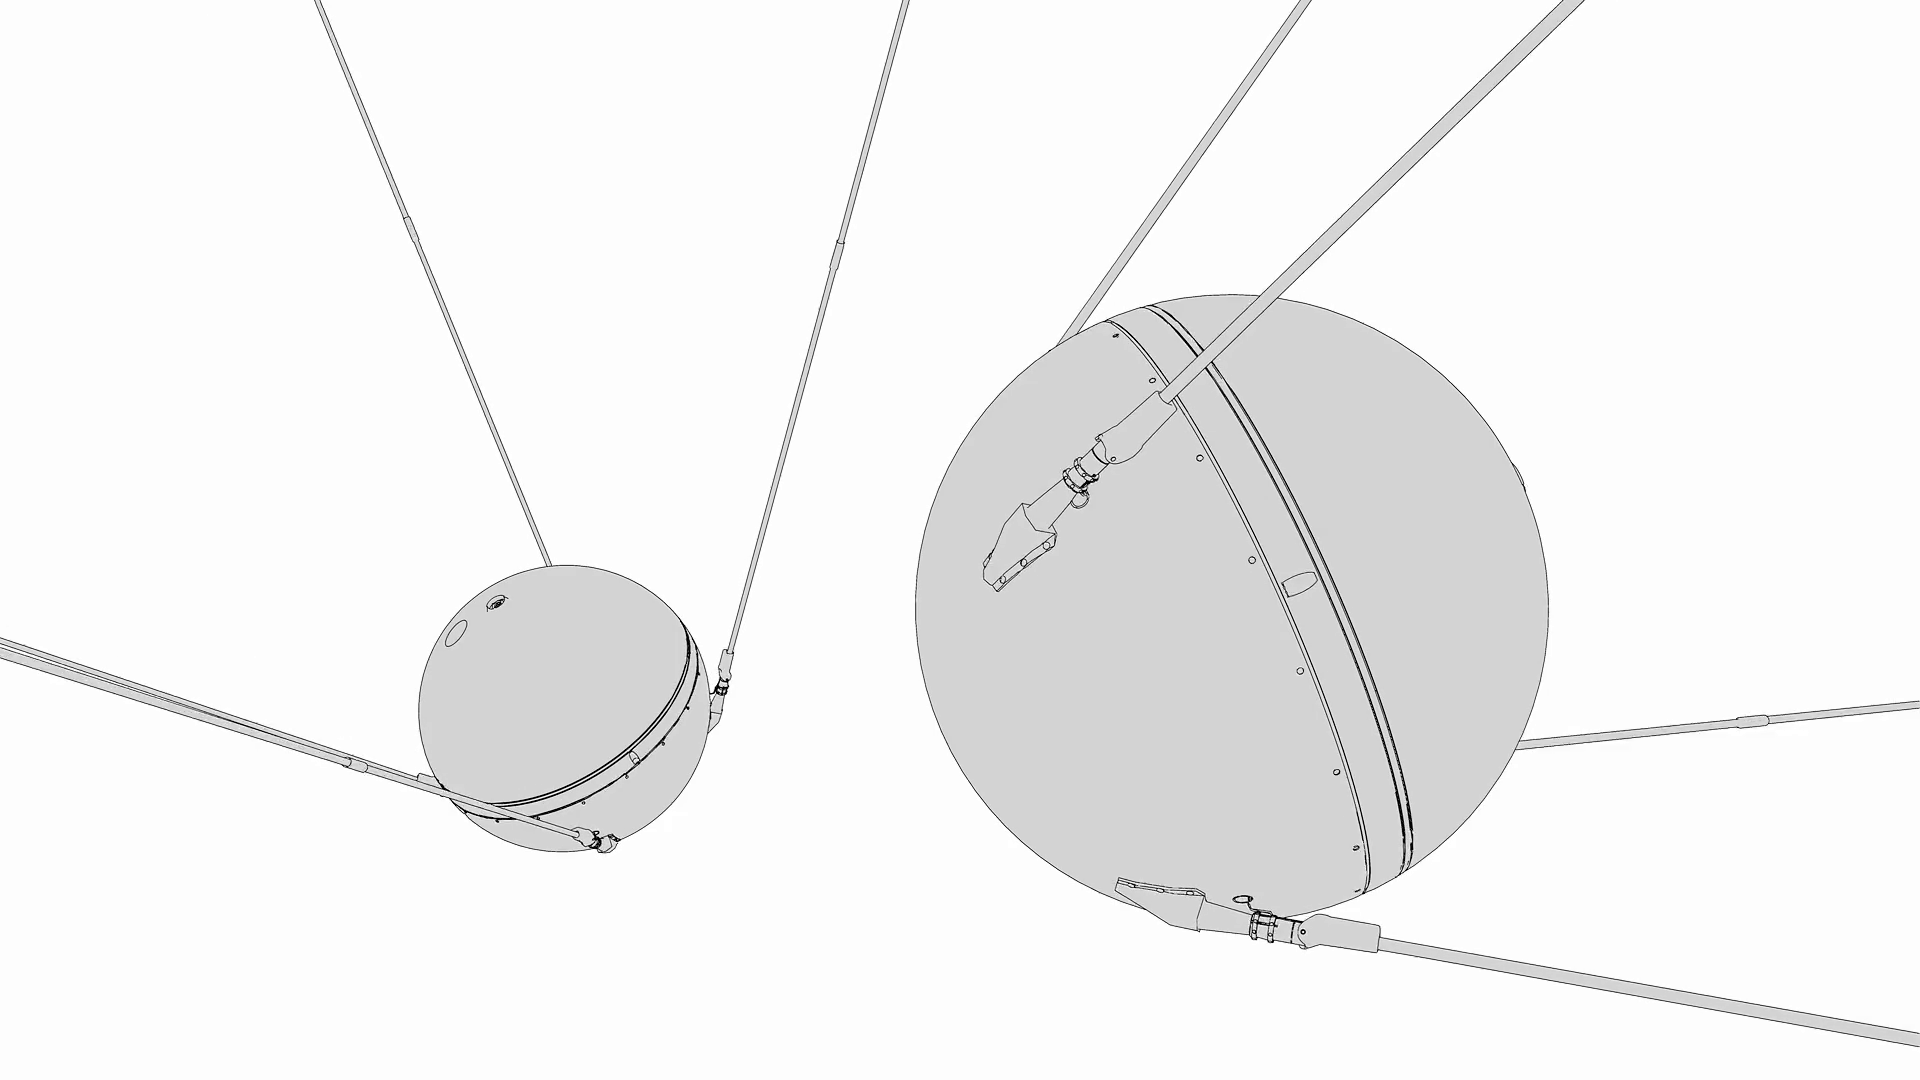 Чертеж ИСЗ Спутник 1. Спутник ПС-1 чертежи. ПС-1 Спутник строение. Первый спутник диаметр